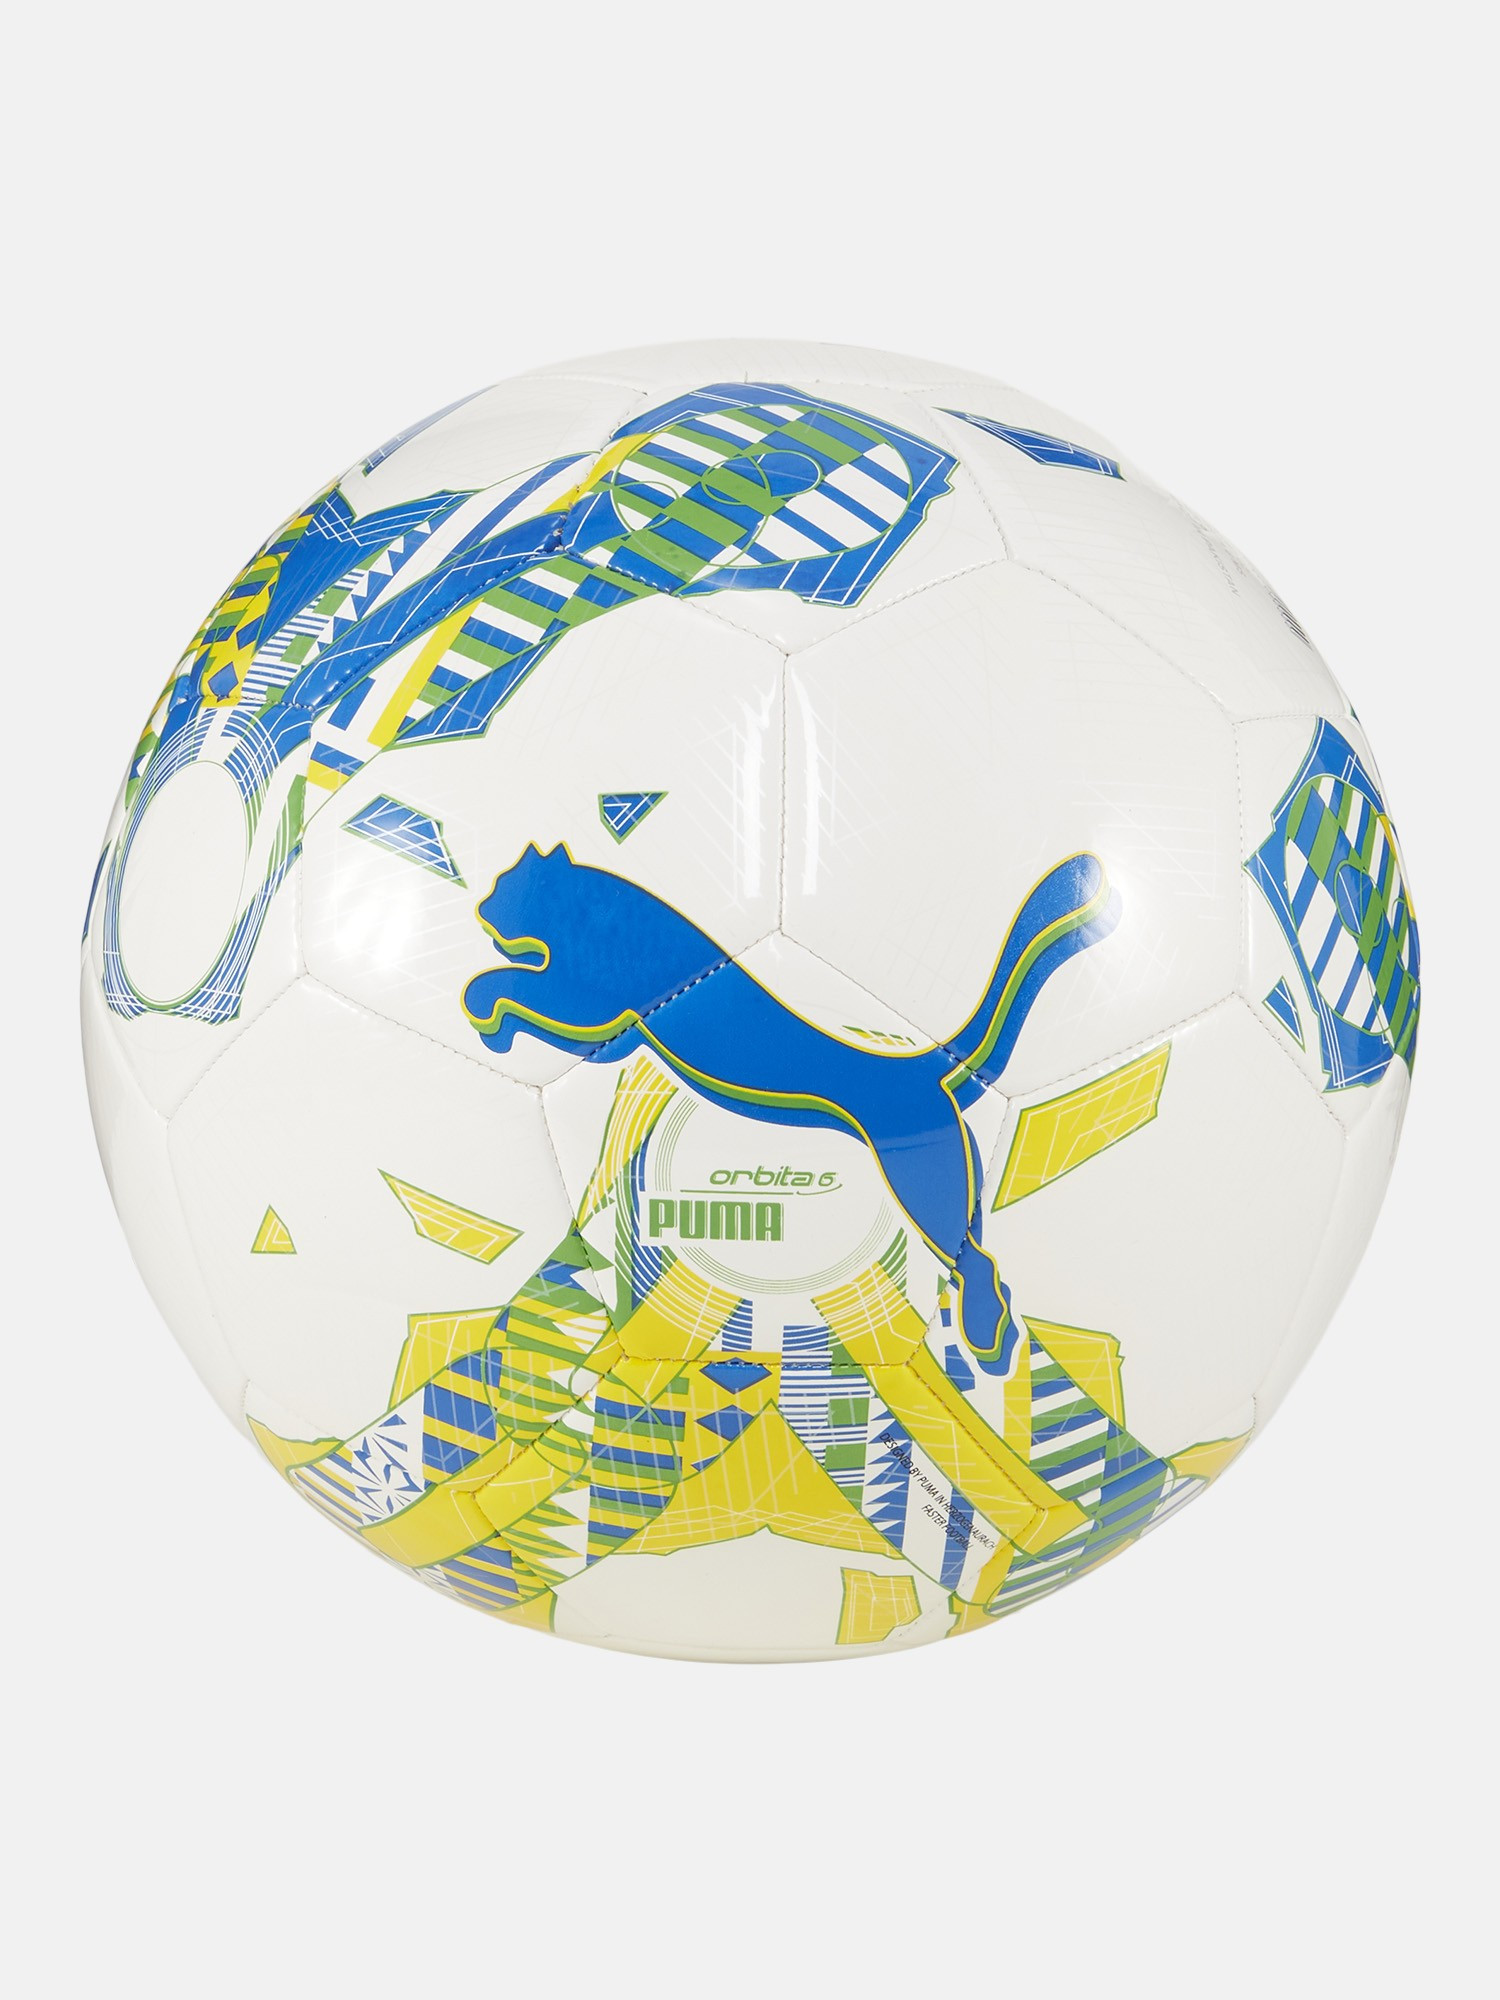 М'яч футбольний PUMA Orbita 6 Fanwear Capsule MS